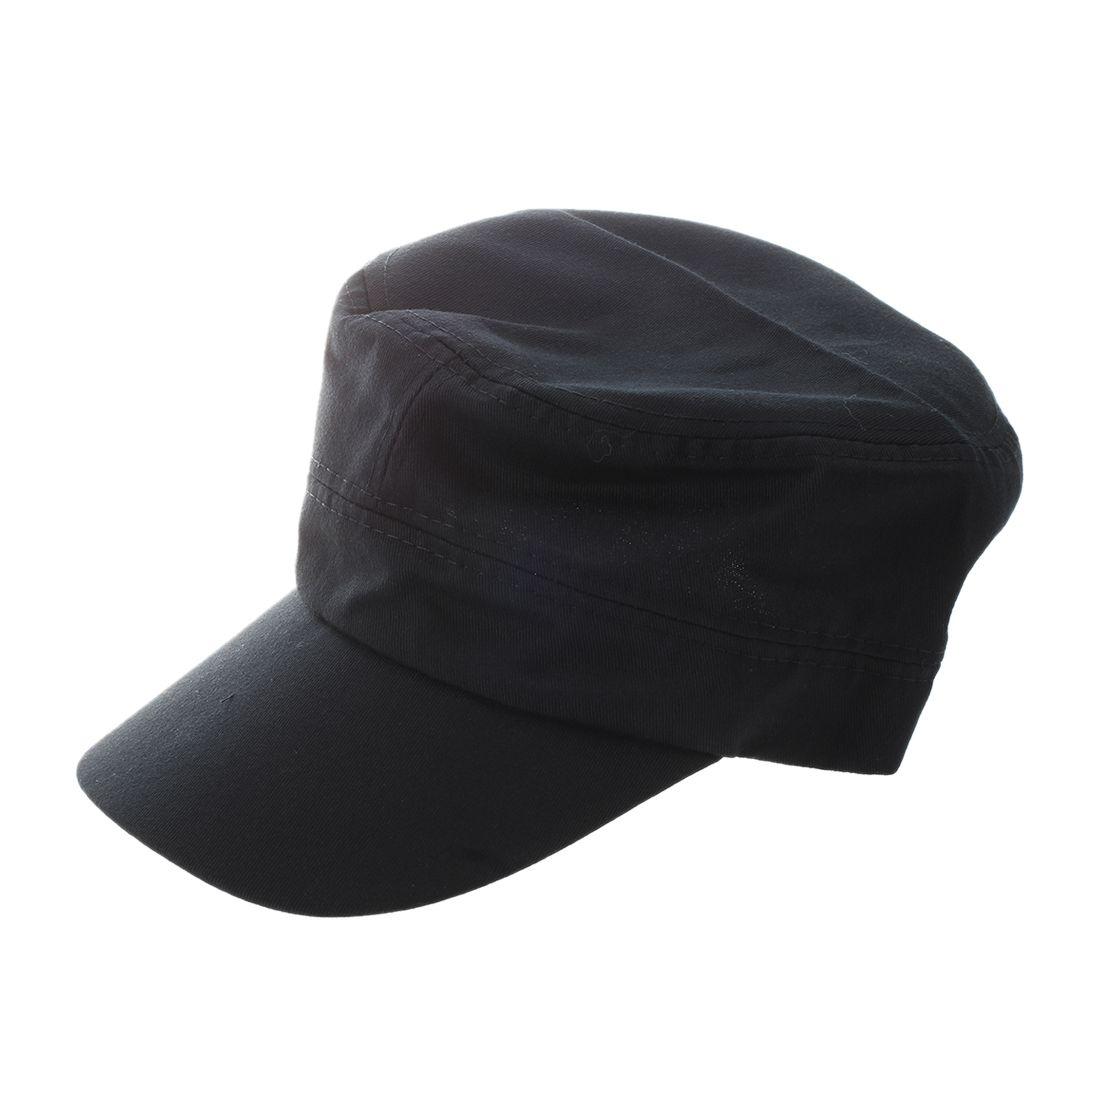 black military cap